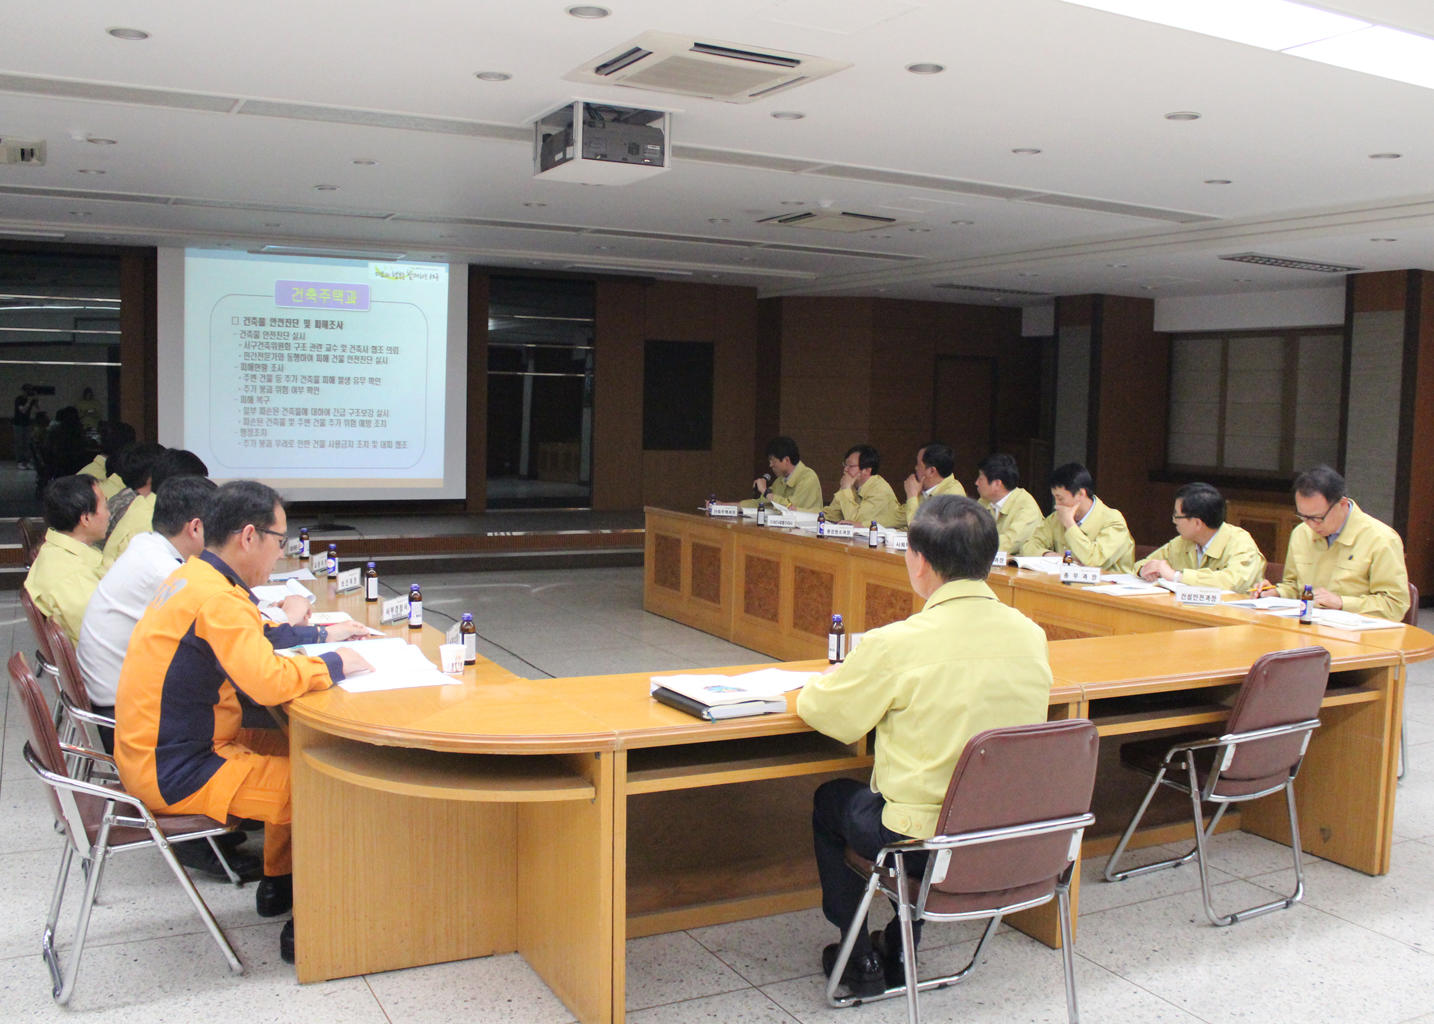 2015년 재난대응(풍수해) 안전한국훈련 (5.21. 3층회의실) 2